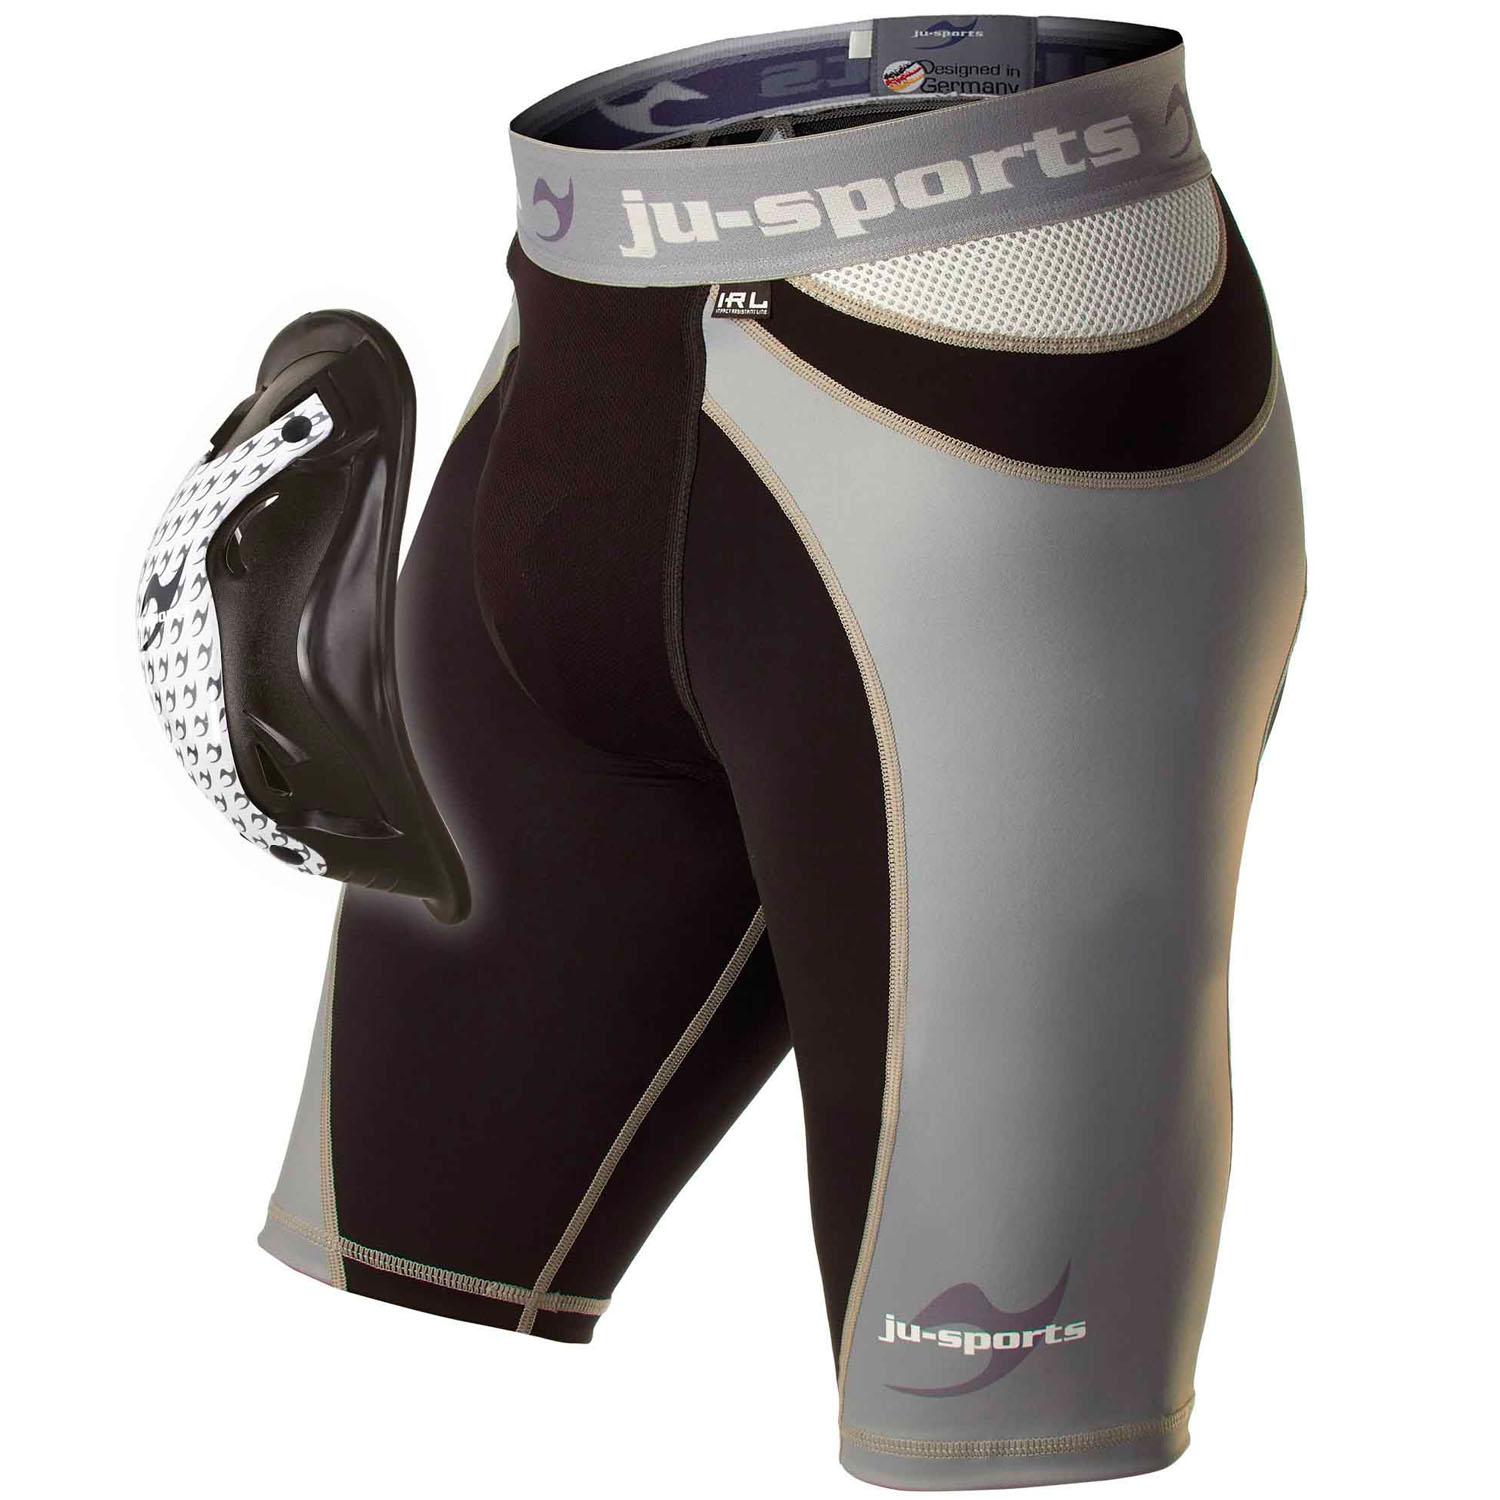 Ju-Sports Compression Shorts, Pro Line Motion Pro Flexcup